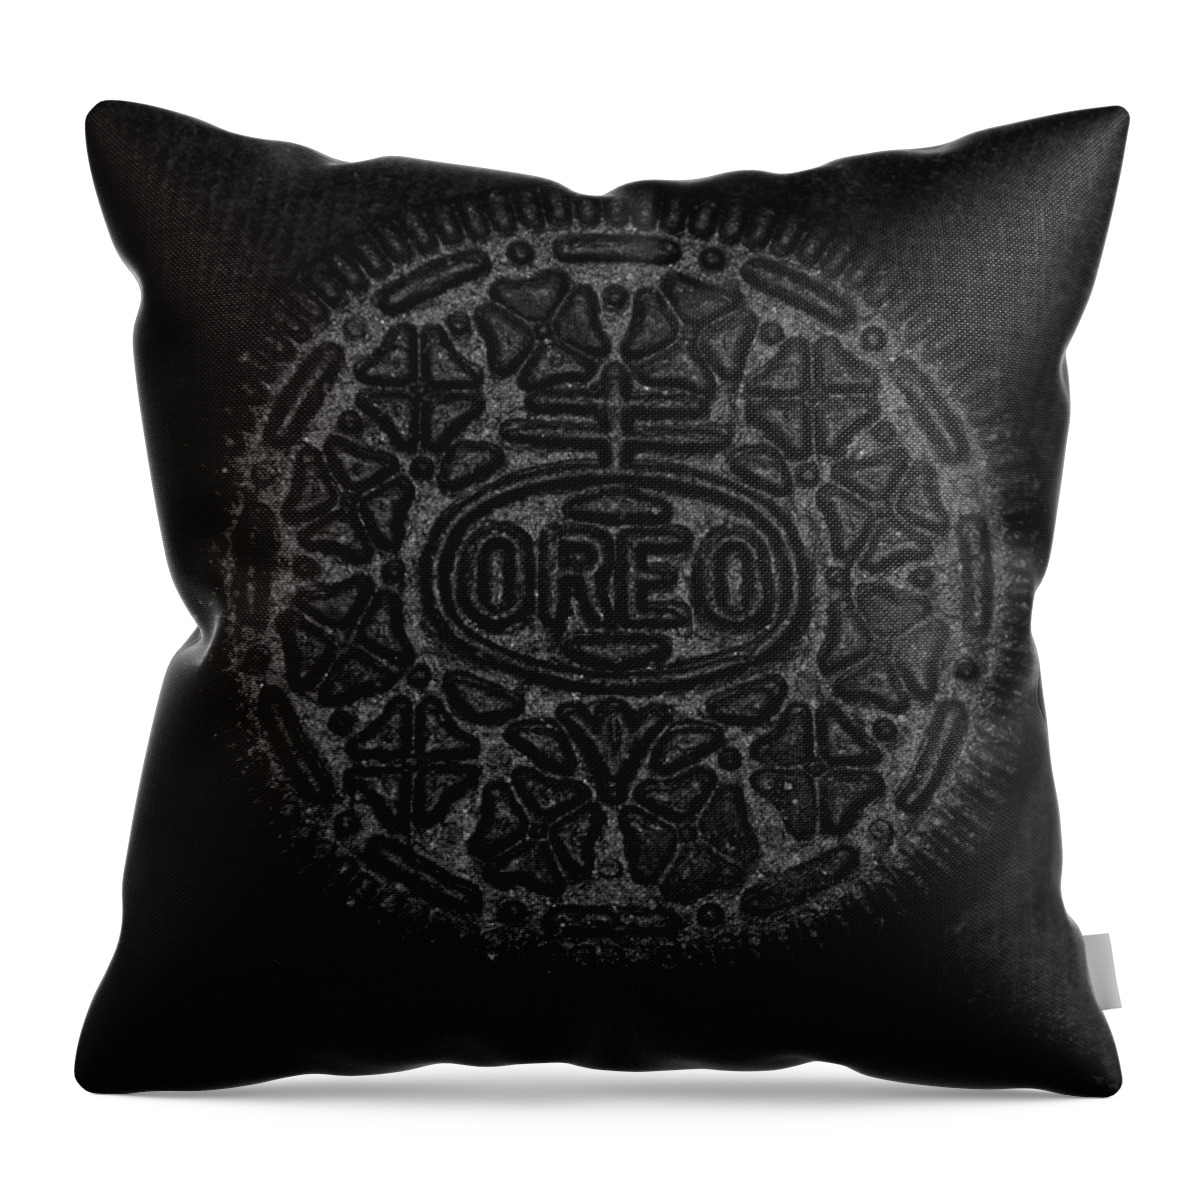 Oreo Throw Pillow featuring the photograph O R E O by Rob Hans